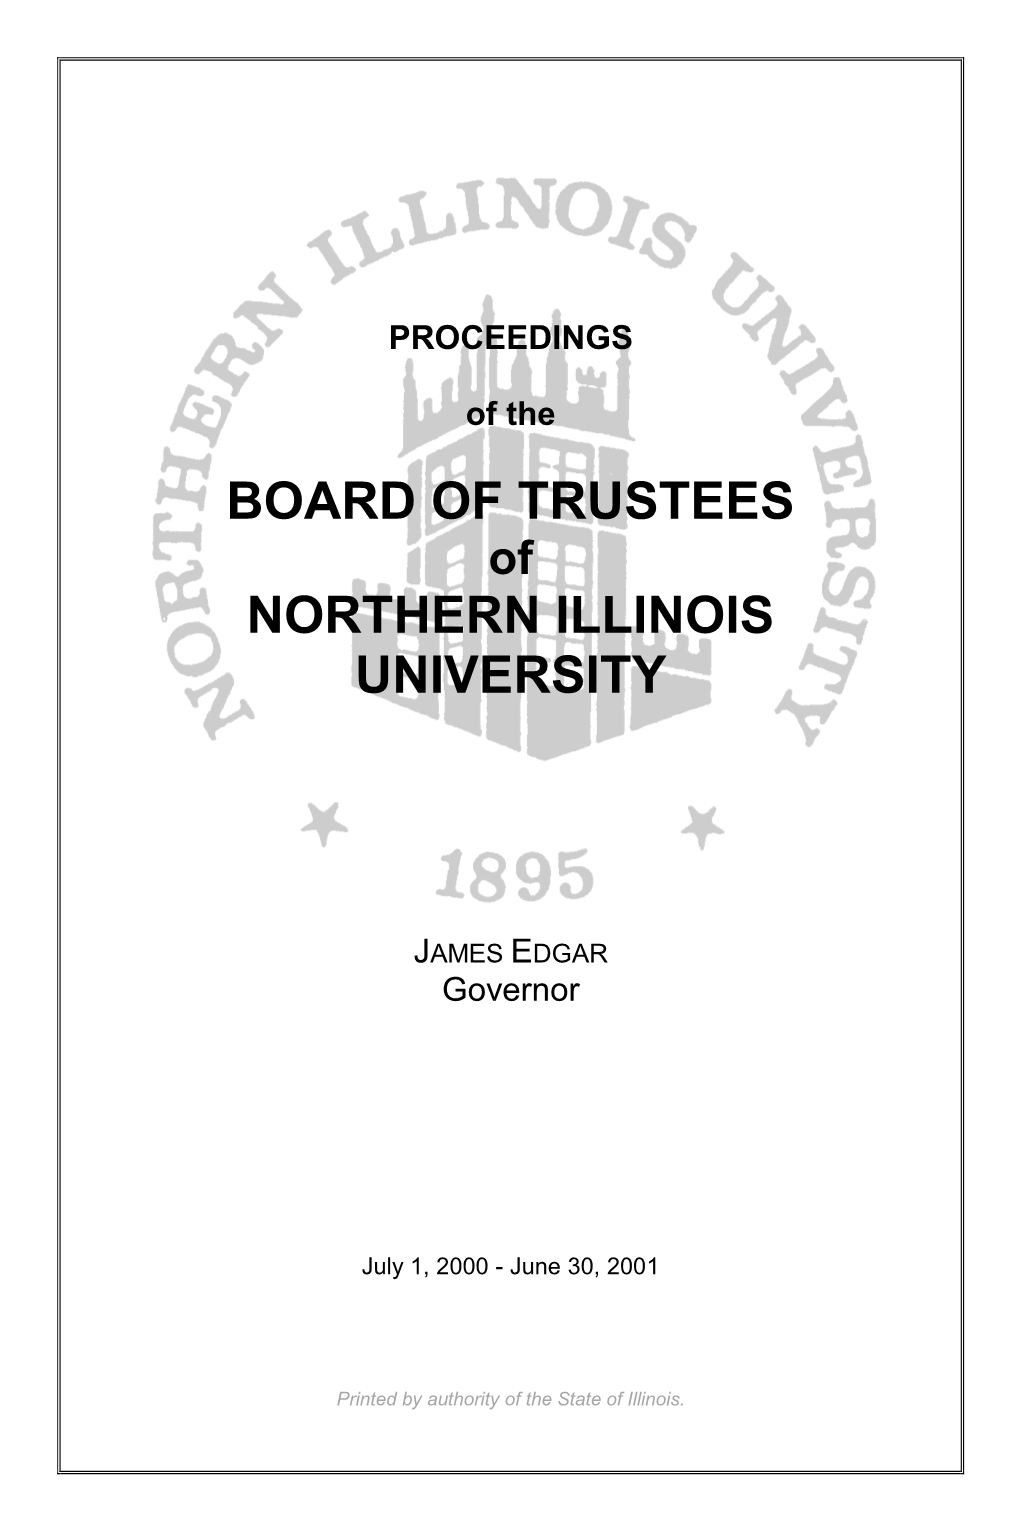 Board of Trustees Northern Illinois University